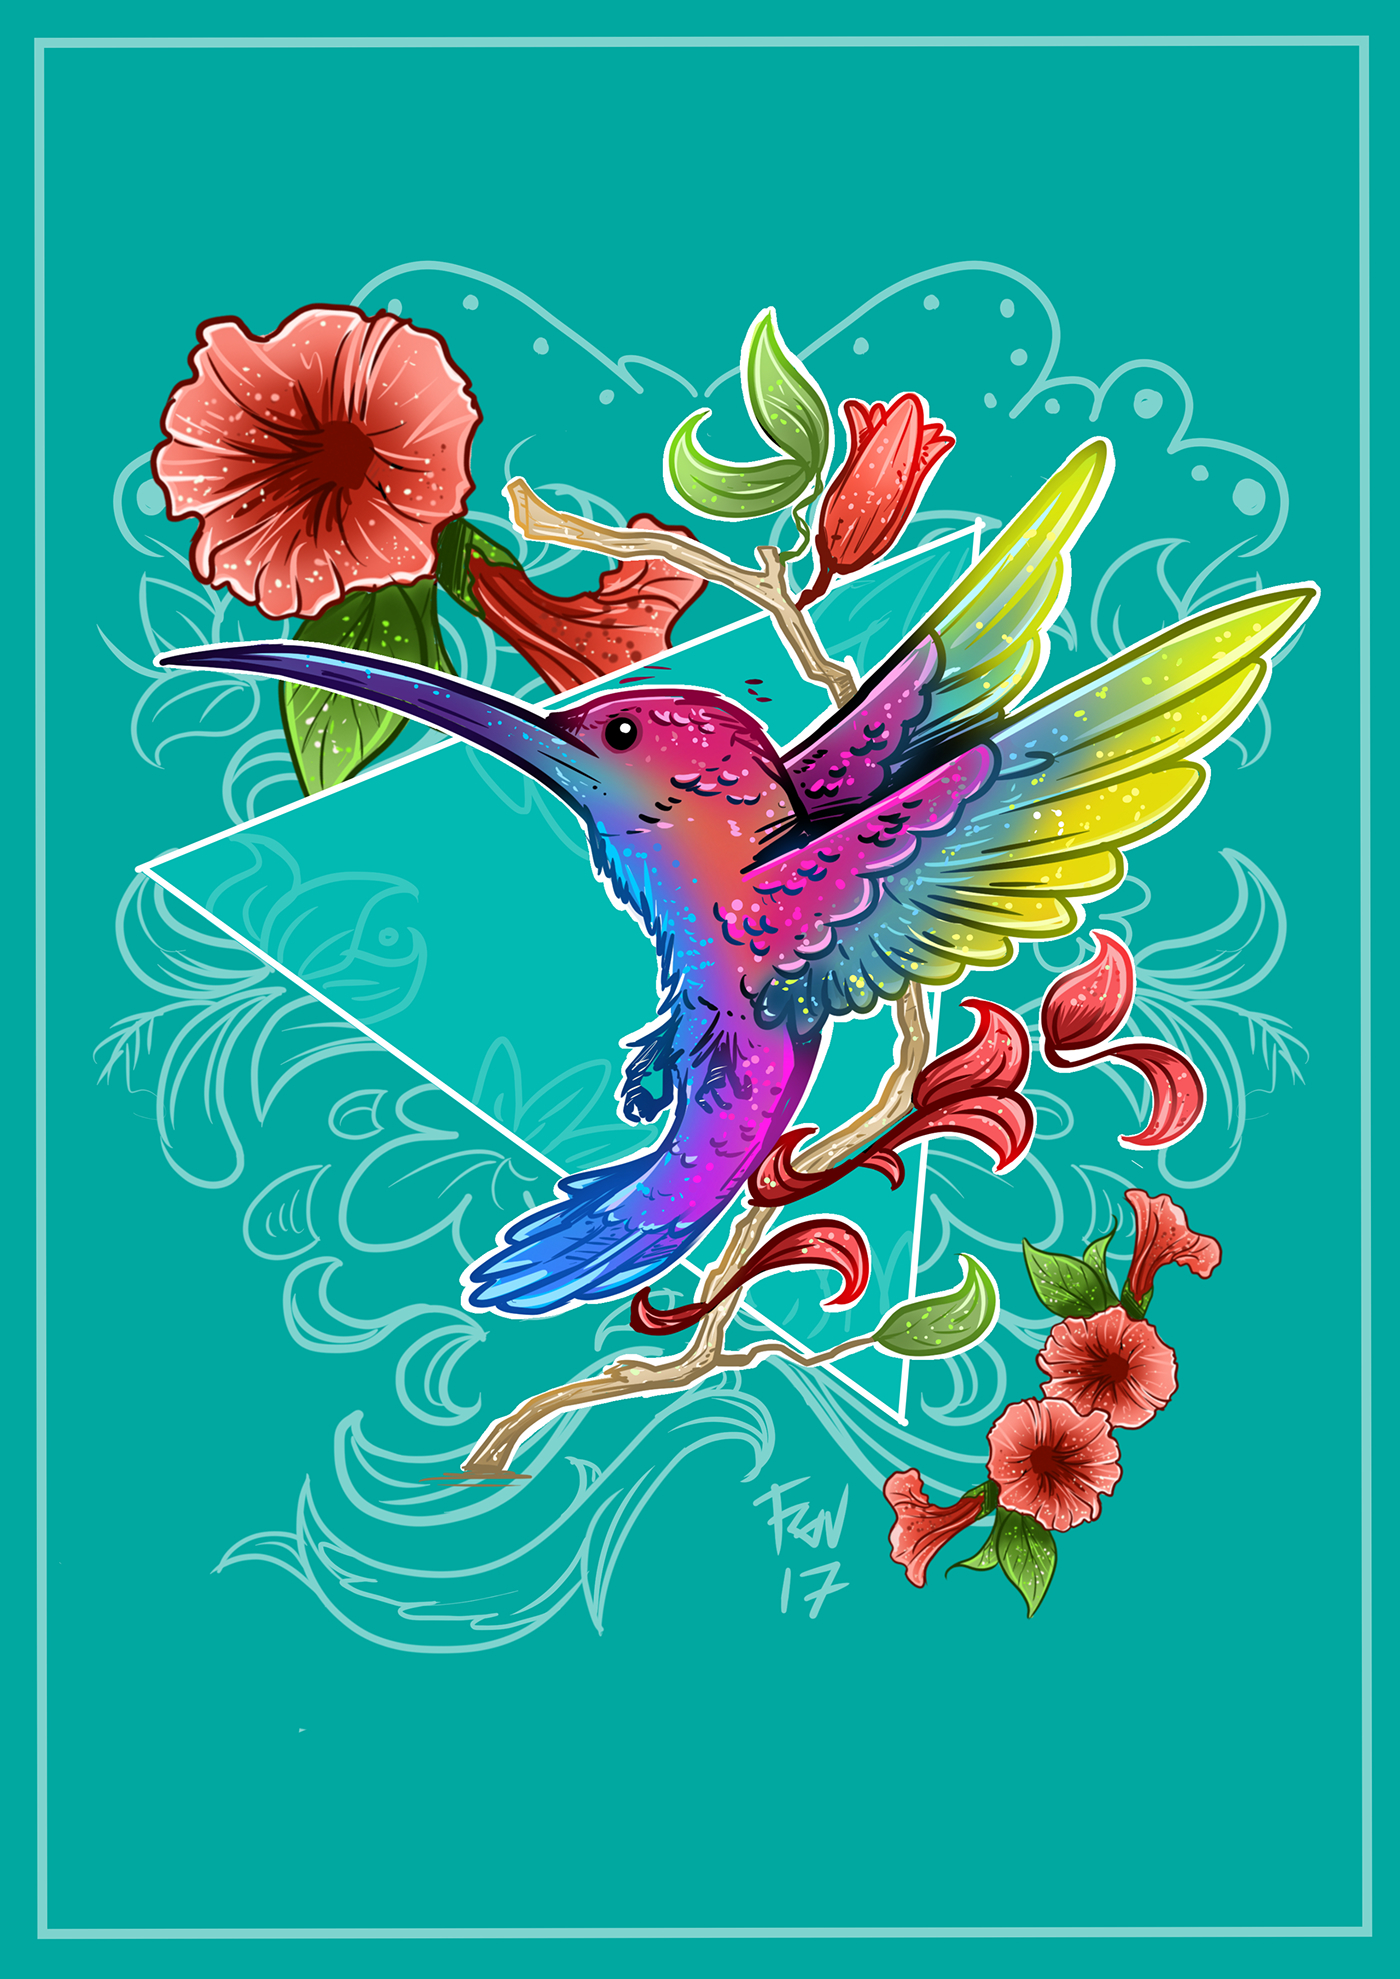 ILLUSTRATION  hummingbird floral digital illustration Digital Art  hummingbird illustration colibri